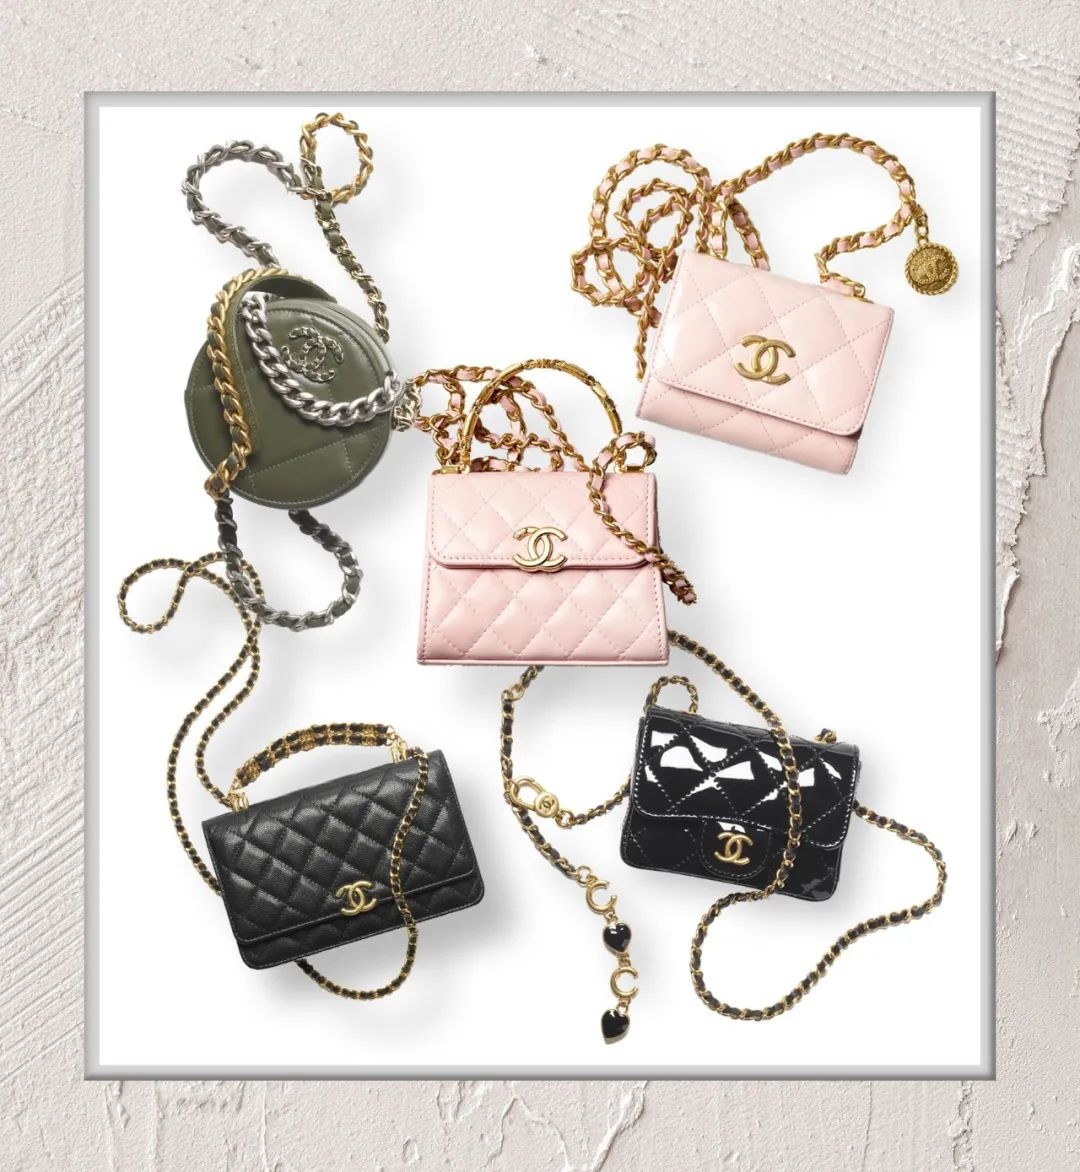 Chanel bags are too expensive, what should I do? (2023 updated)-Negozio in linea della borsa falsa di Louis Vuitton di migliore qualità, borsa del progettista della replica ru